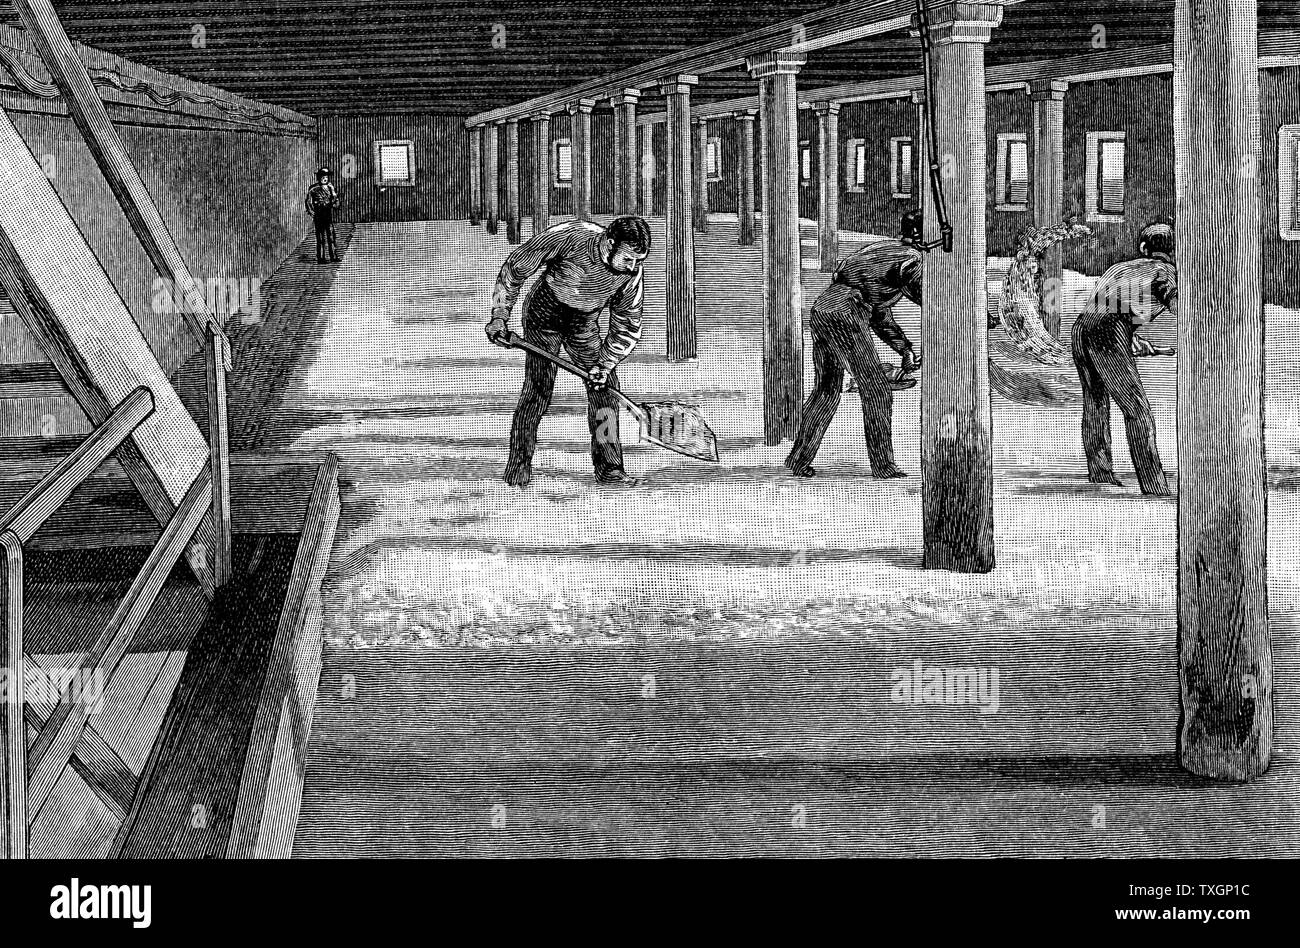 Dans un sol brassicole brasserie américaine. La gravure sur bois 1885 Banque D'Images